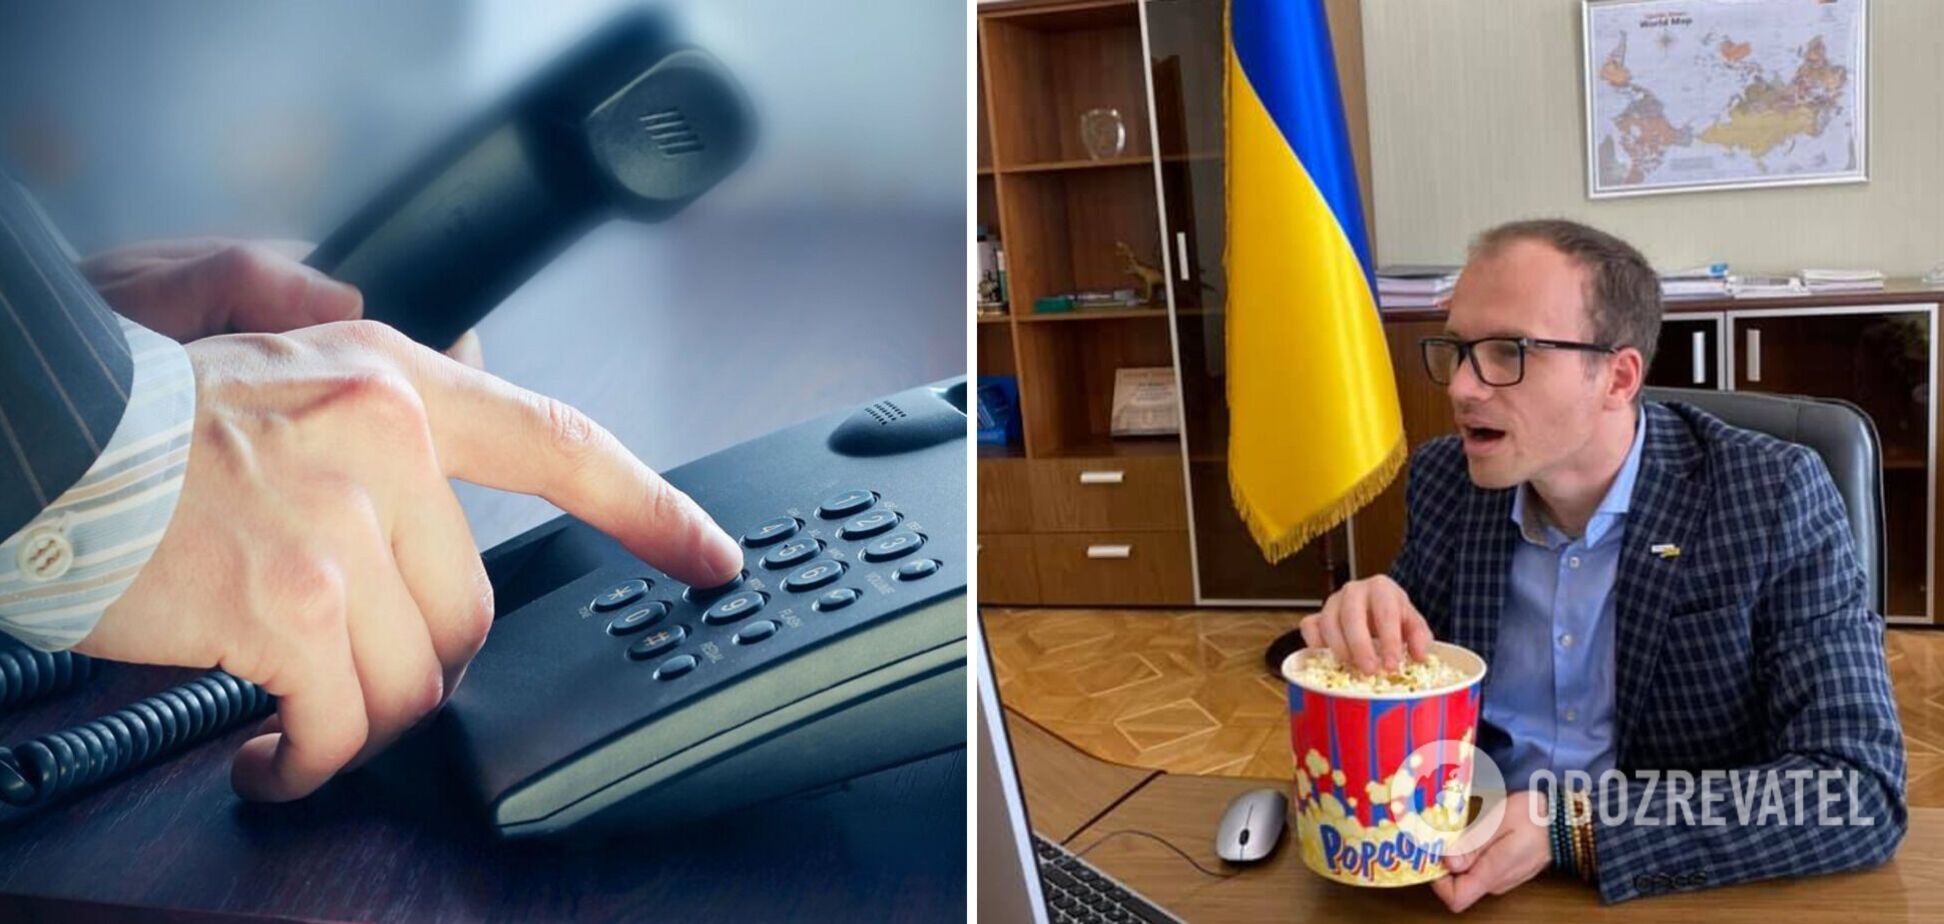 Малюська анонсував дзвінки та інтернет для ув'язнених у СІЗО в Україні: послуга буде платною